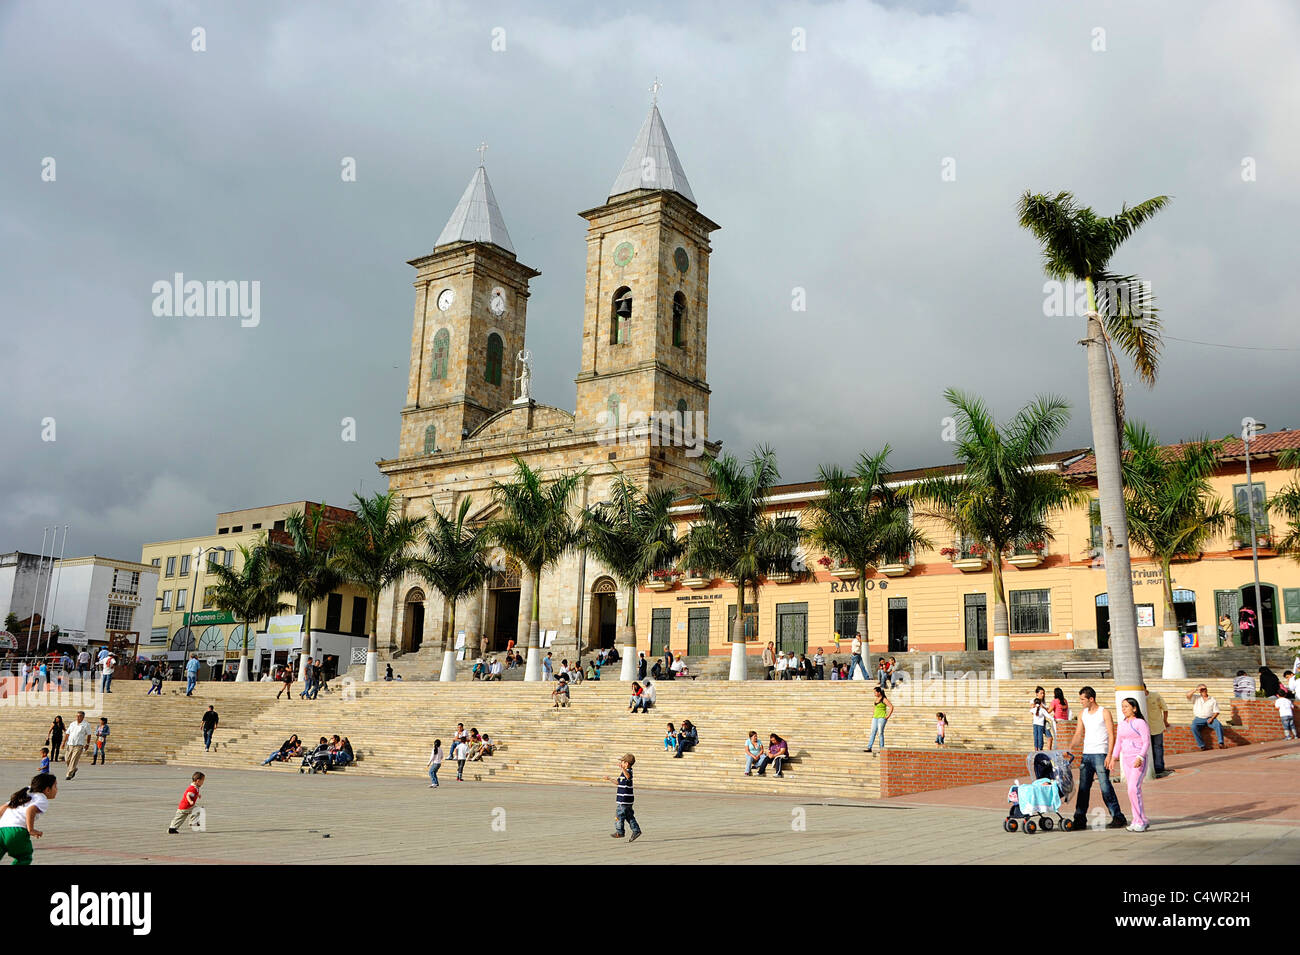 La piazza centrale della città di Fusagasuga quaranta miglia a sud-ovest della capitale Bogotà, Colombia. Foto Stock